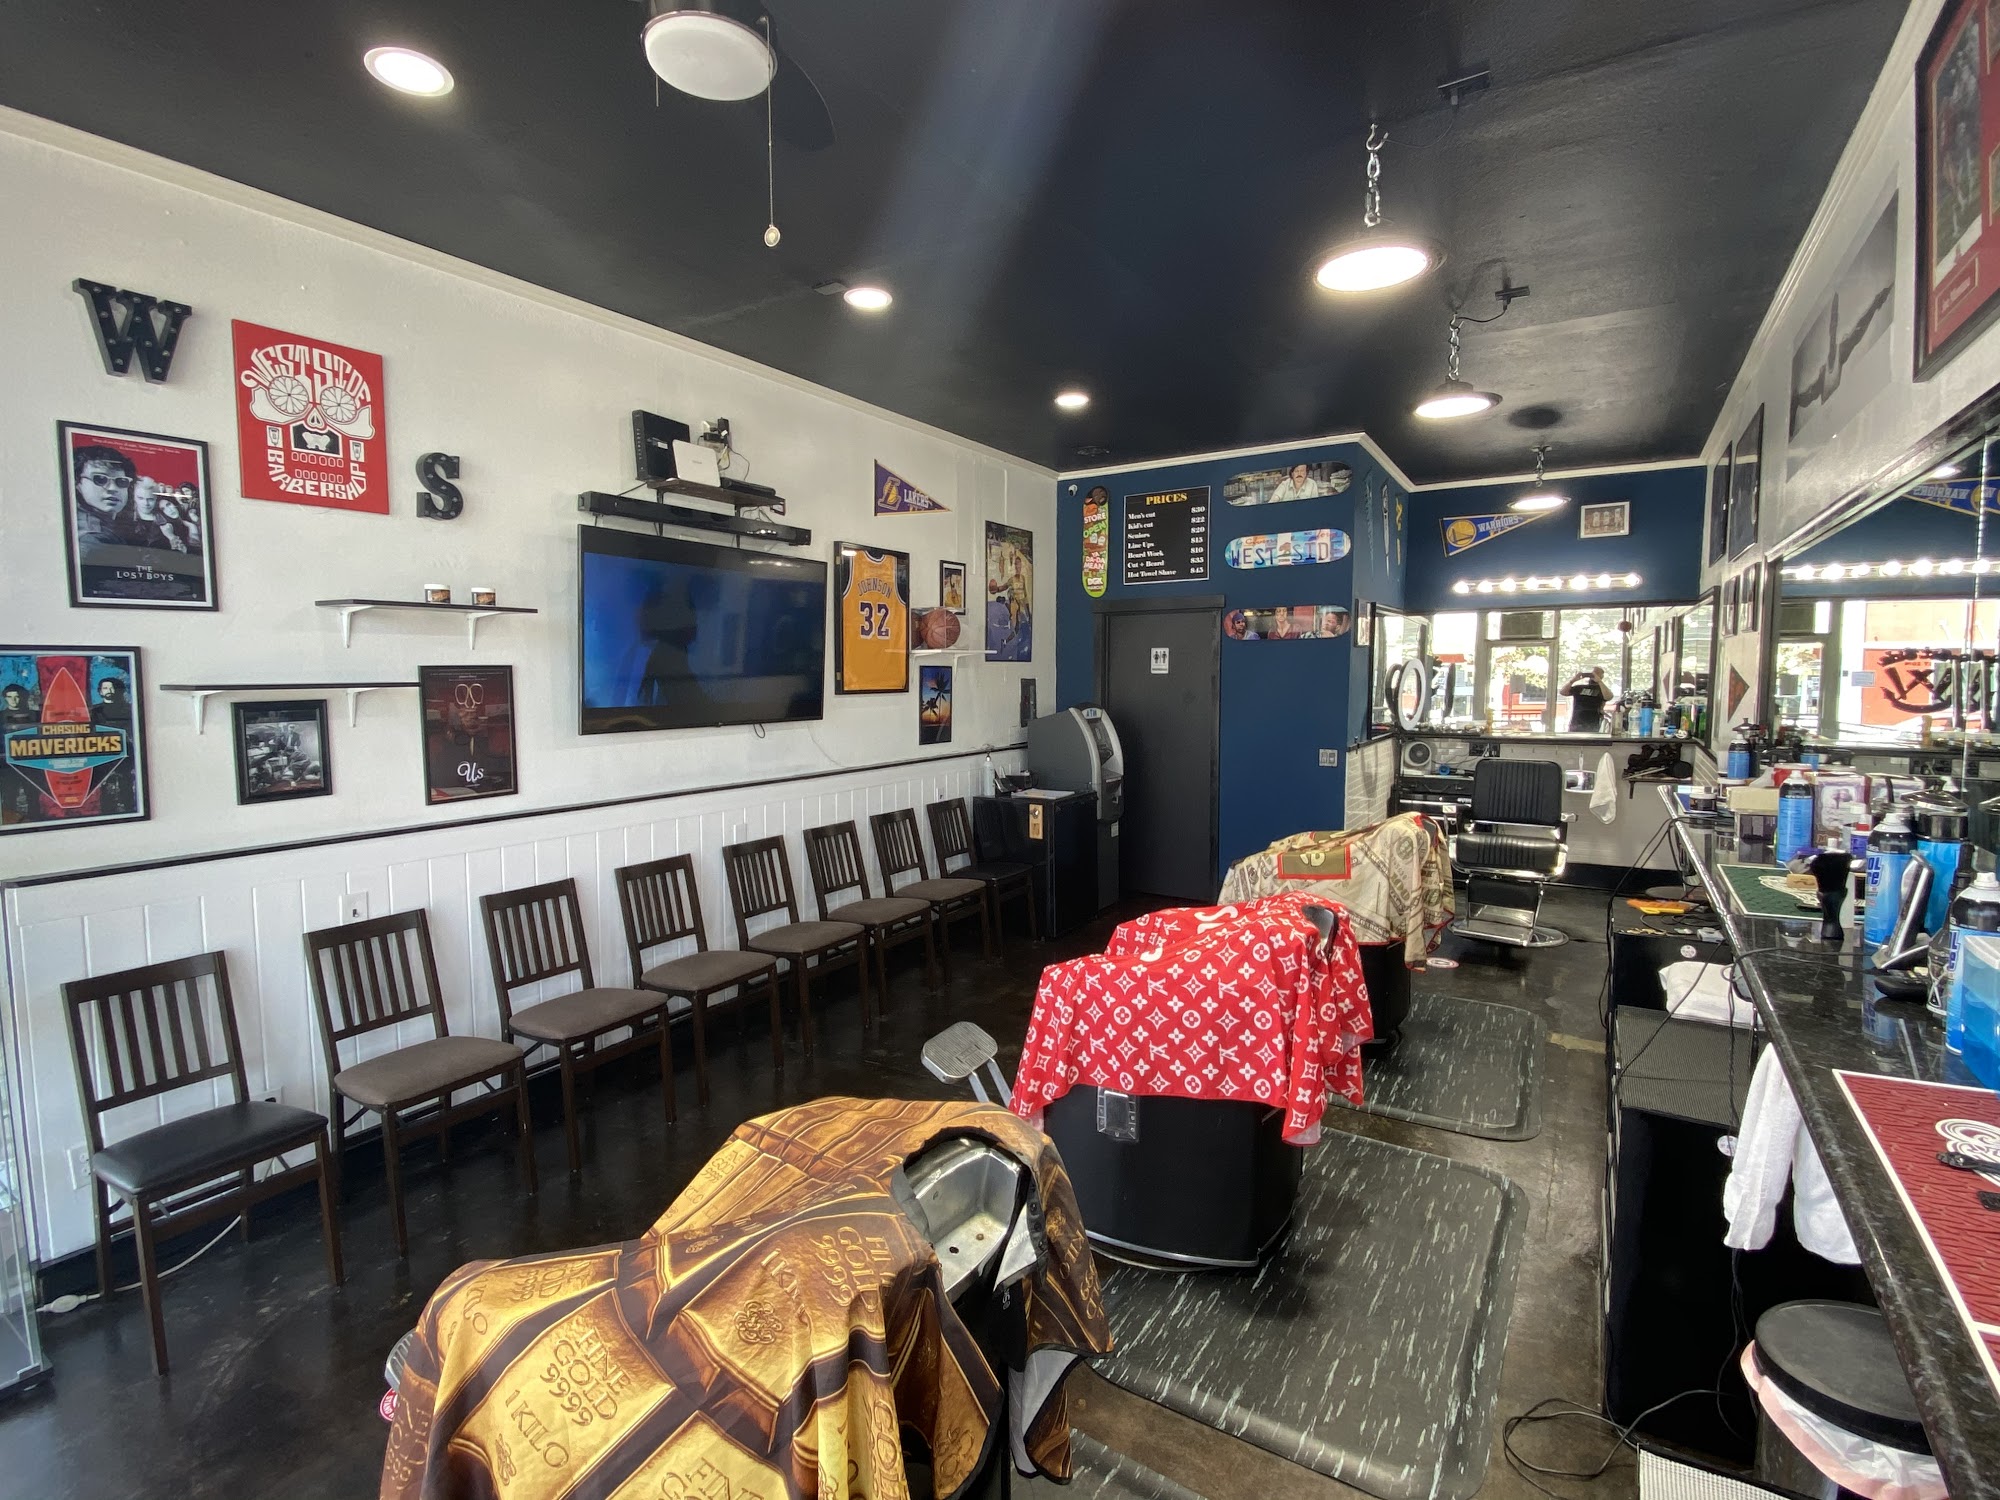 Westside Barbershop